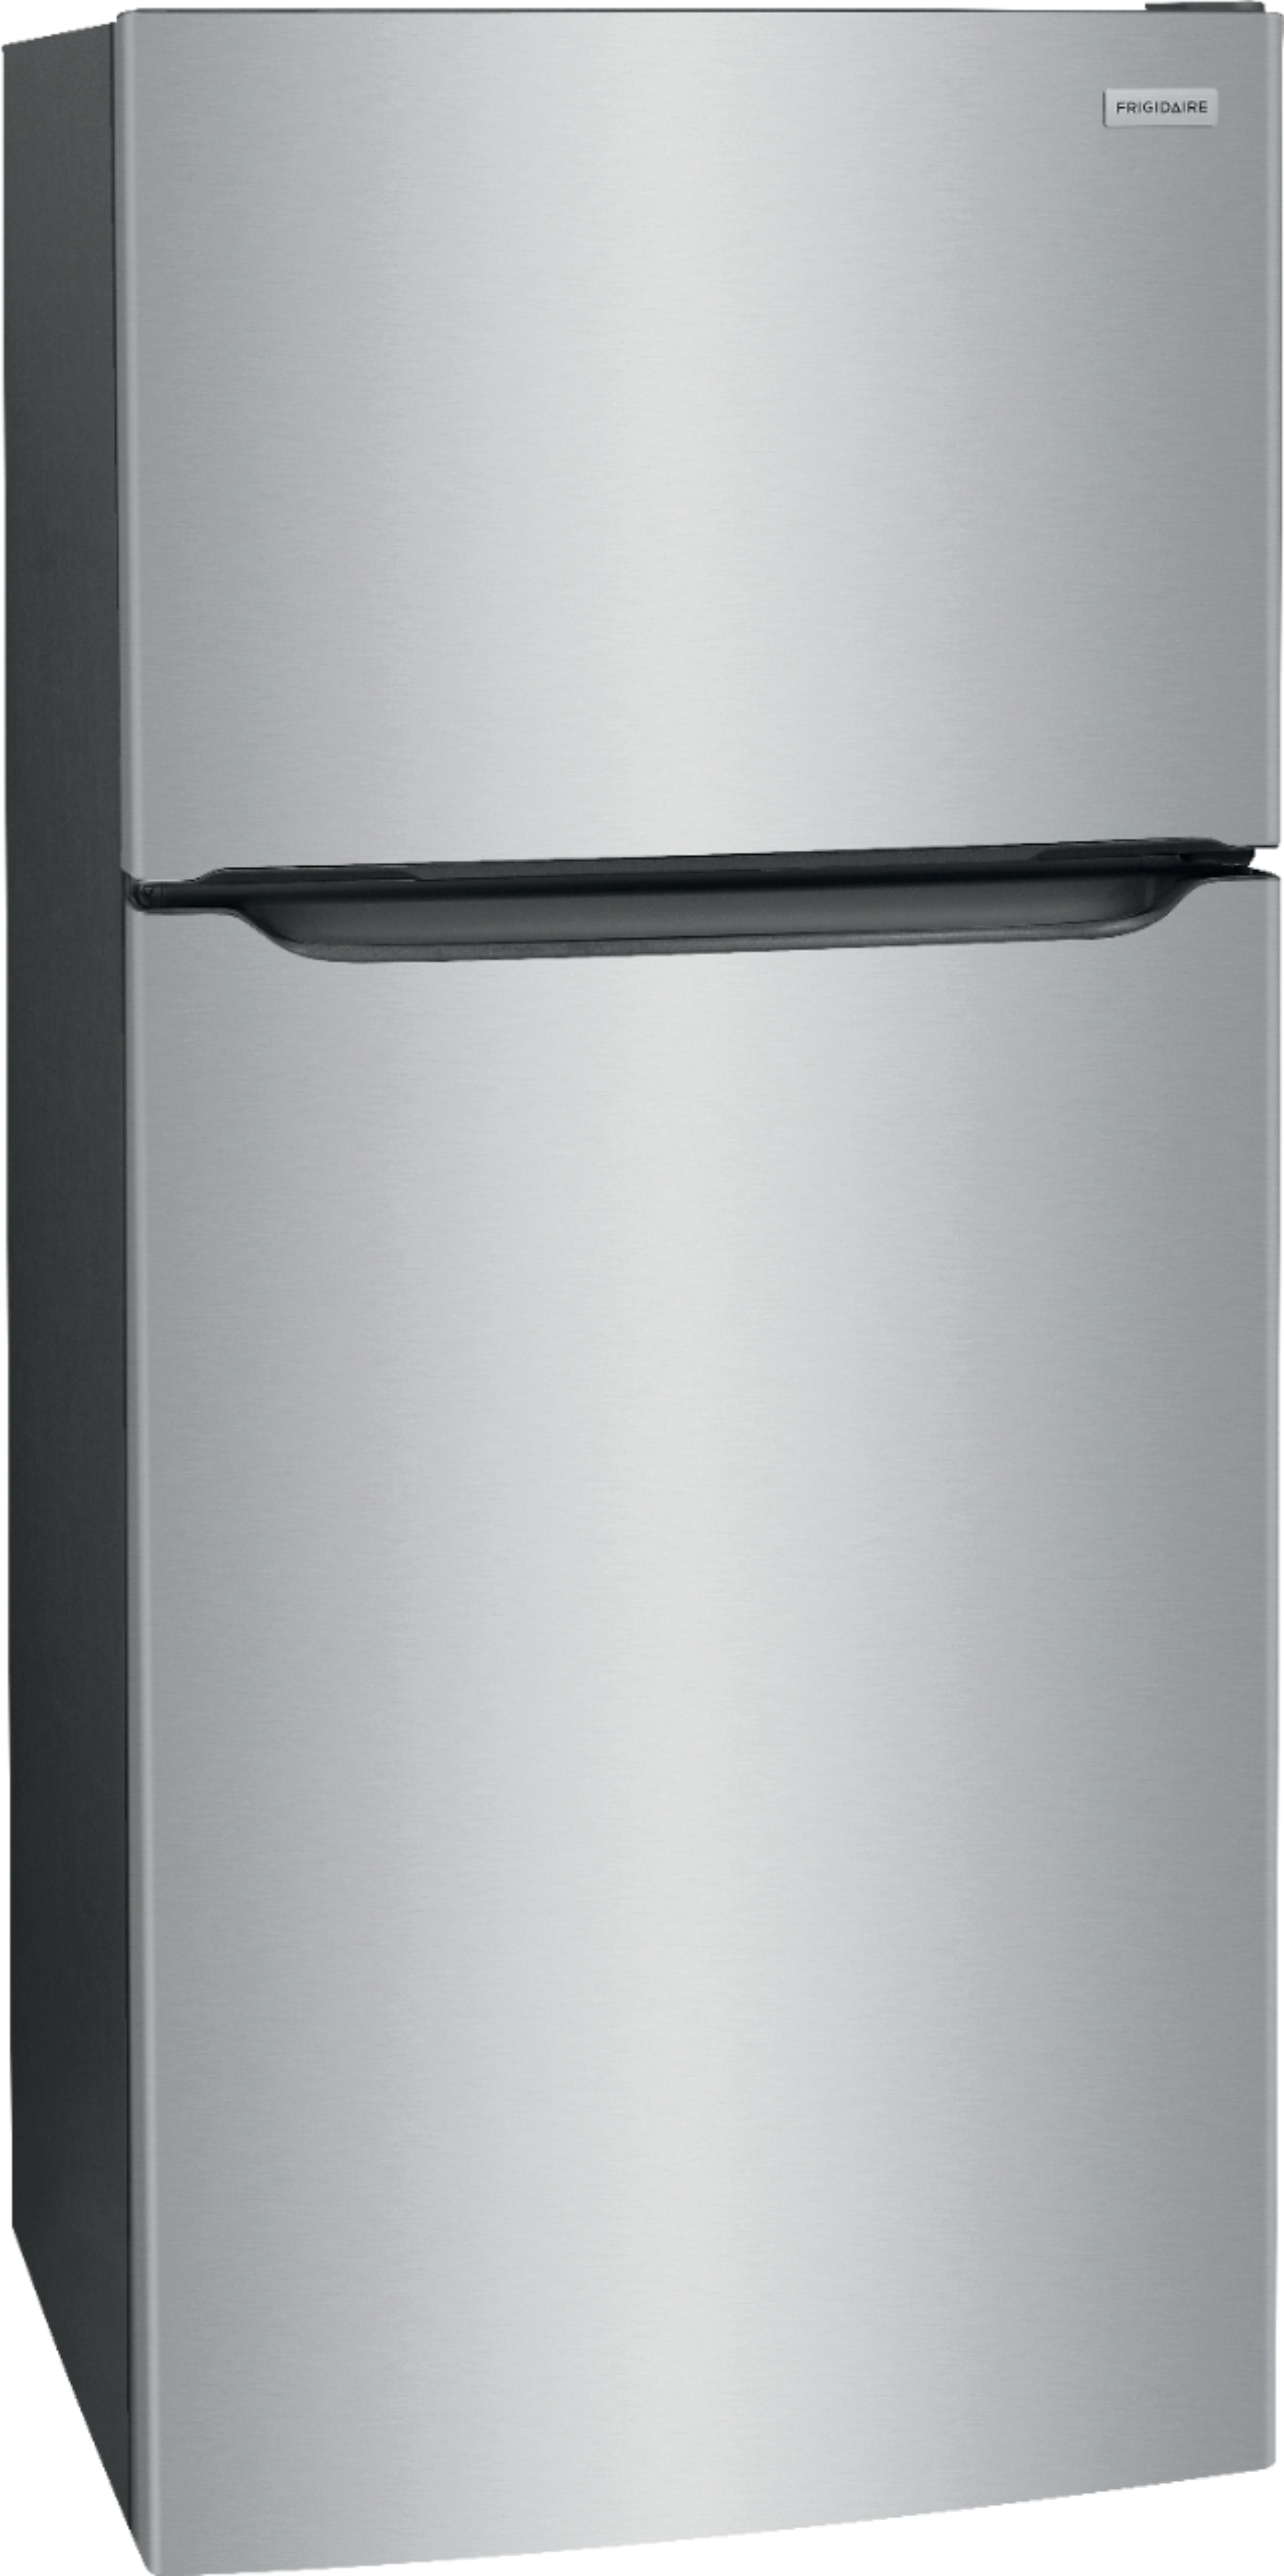 Angle View: Frigidaire - 18.3 Cu. Ft. Top-Freezer Refrigerator - Gray